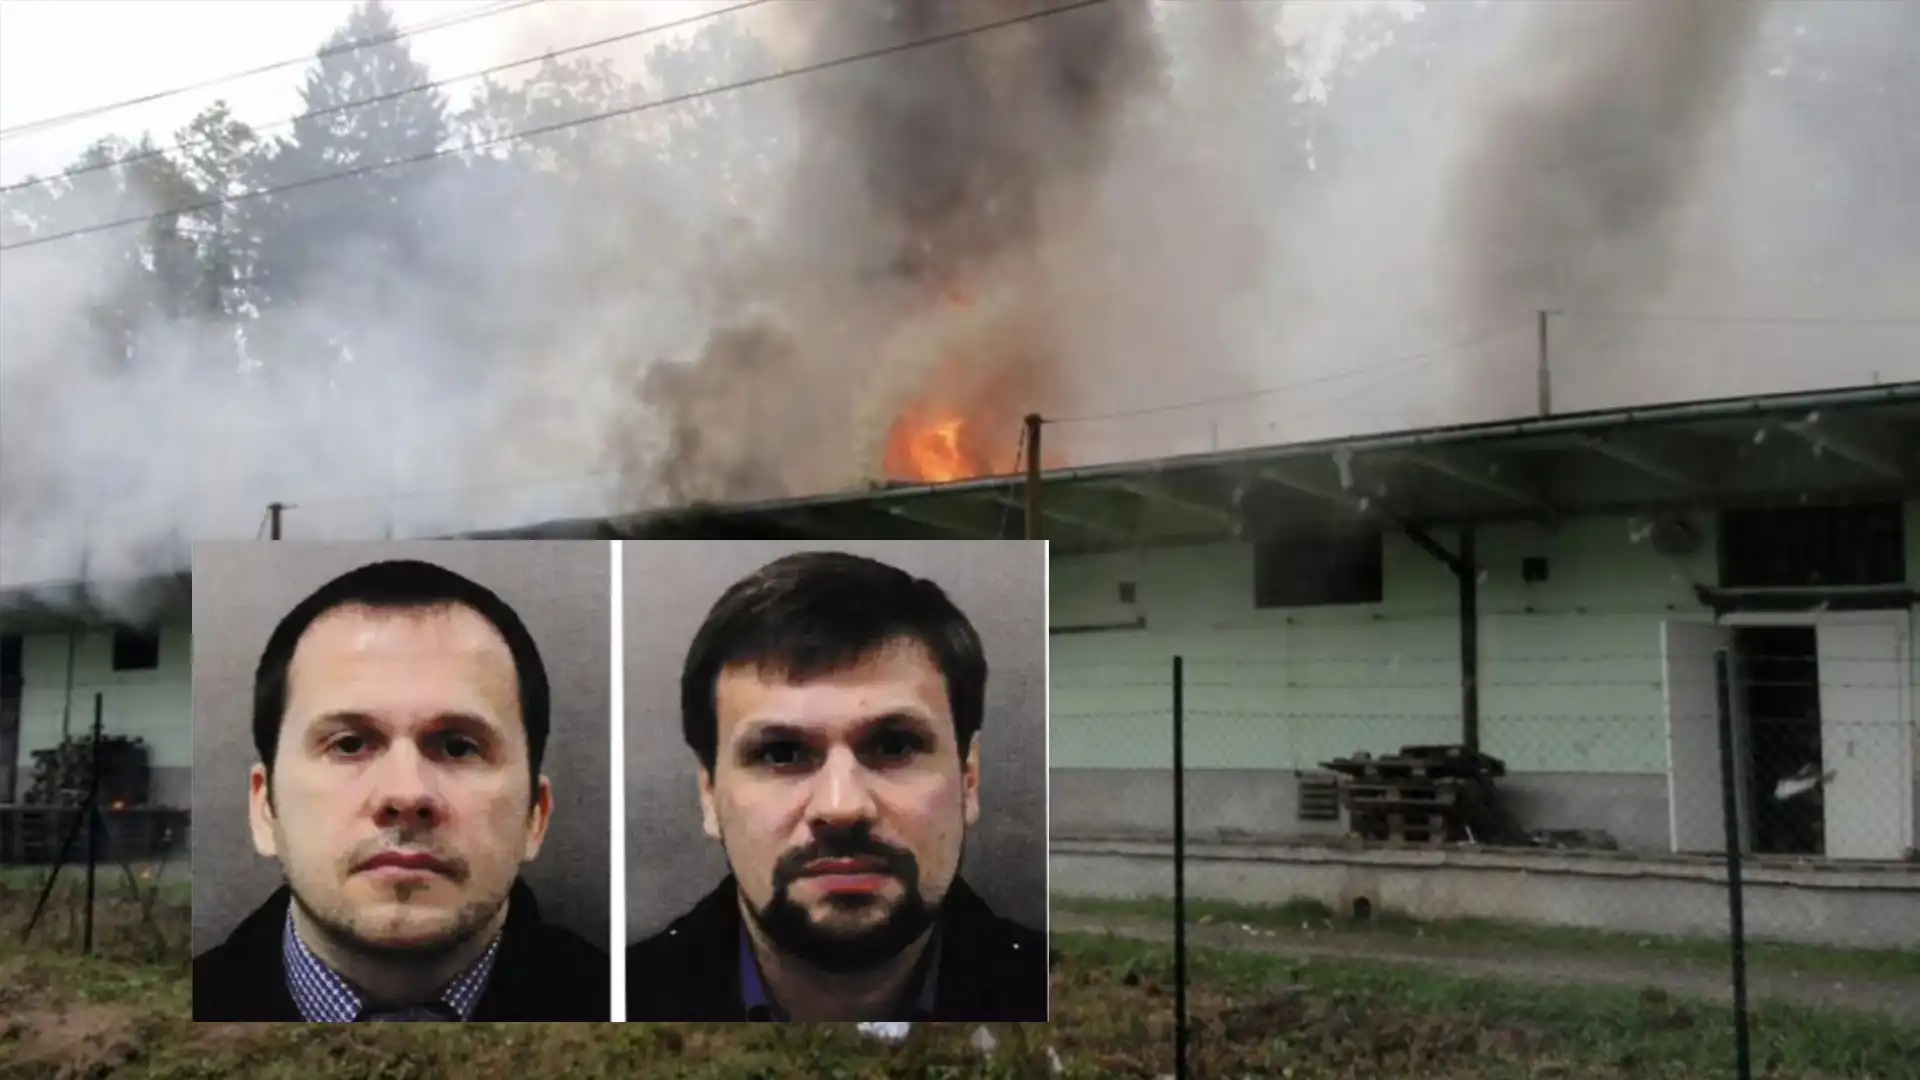 Rusko obviněno z vrbětických explozí: Česká policie uzavírá vyšetřování bez konkrétních důkazů